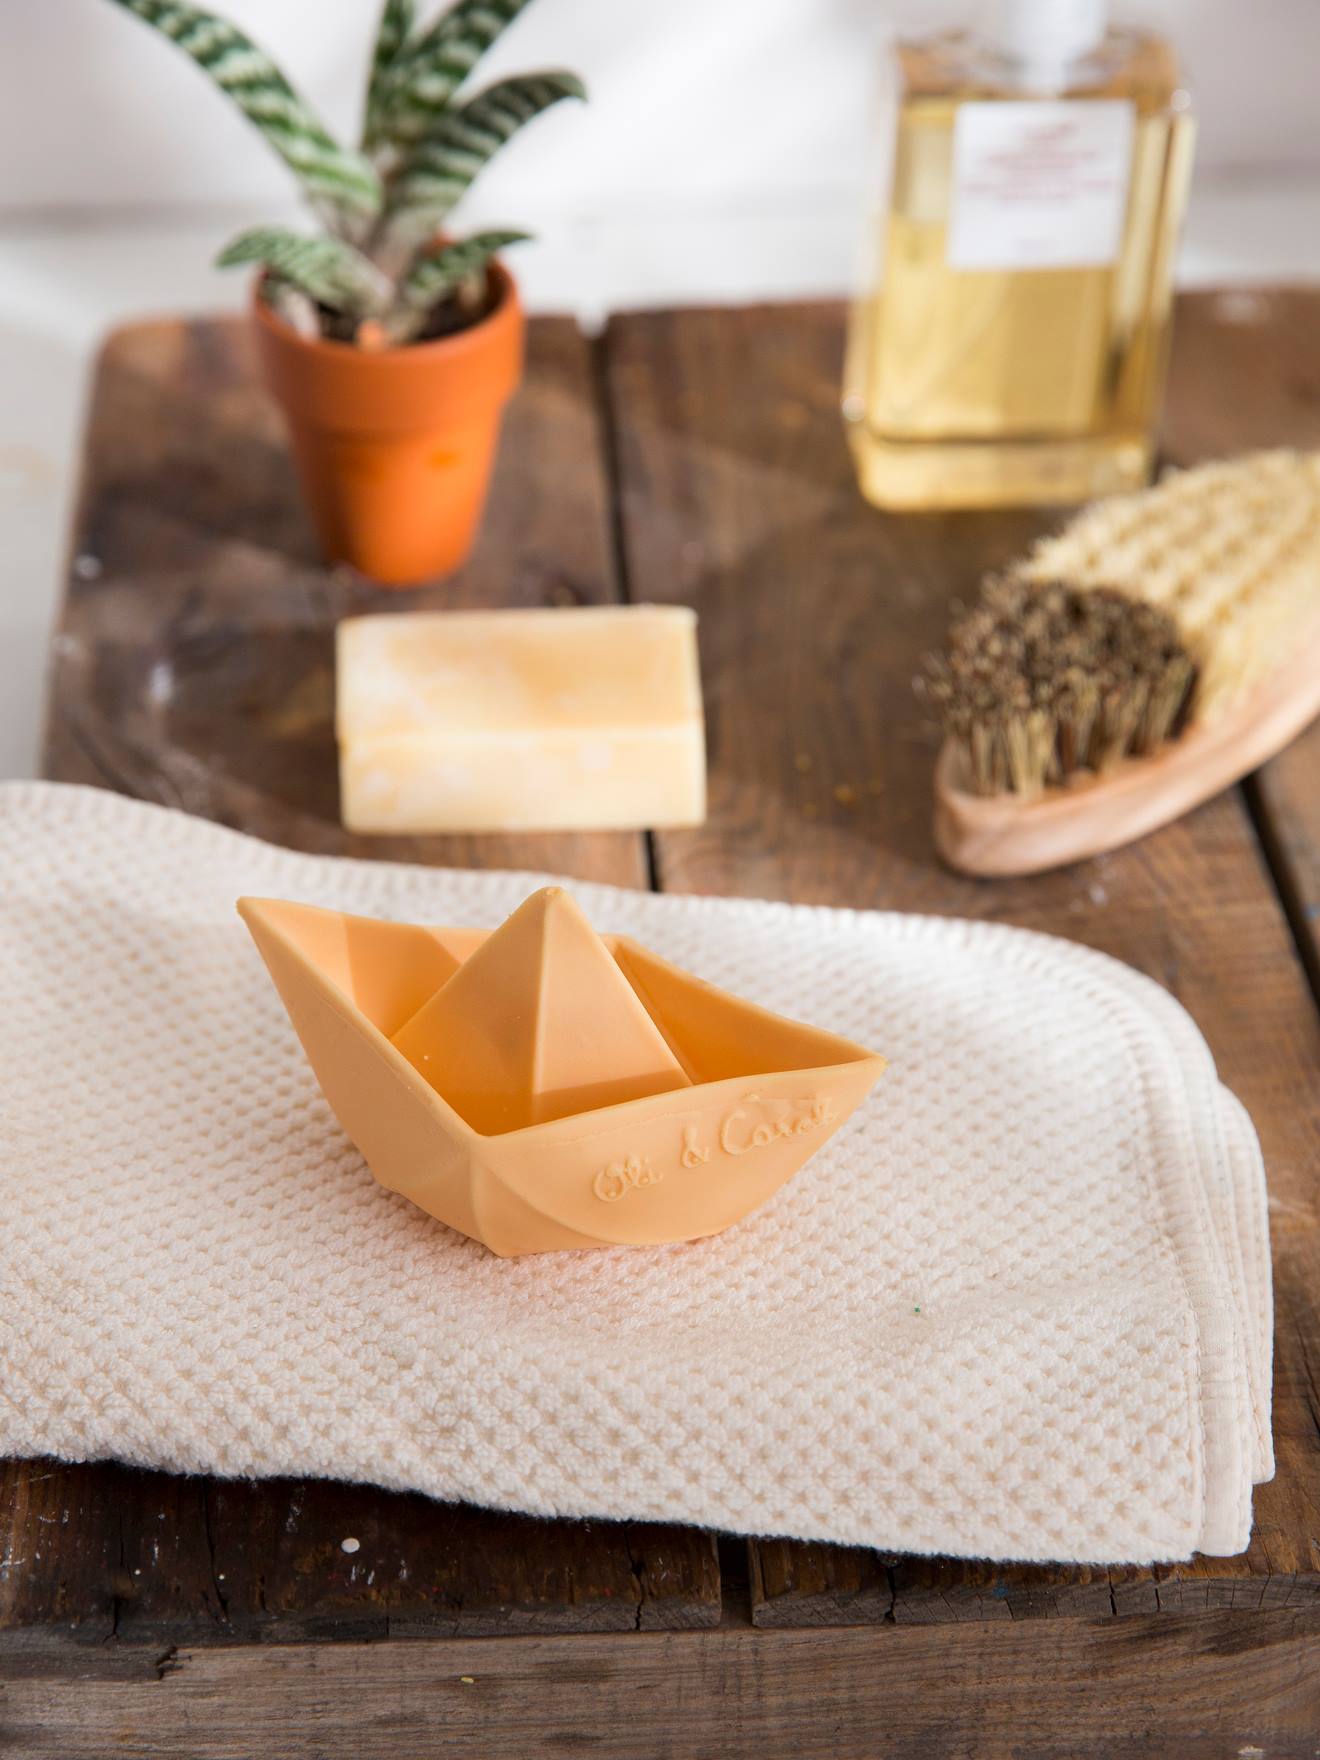 Origami Boat Bath Time Toy, by OLI & CAROL beige medium striped